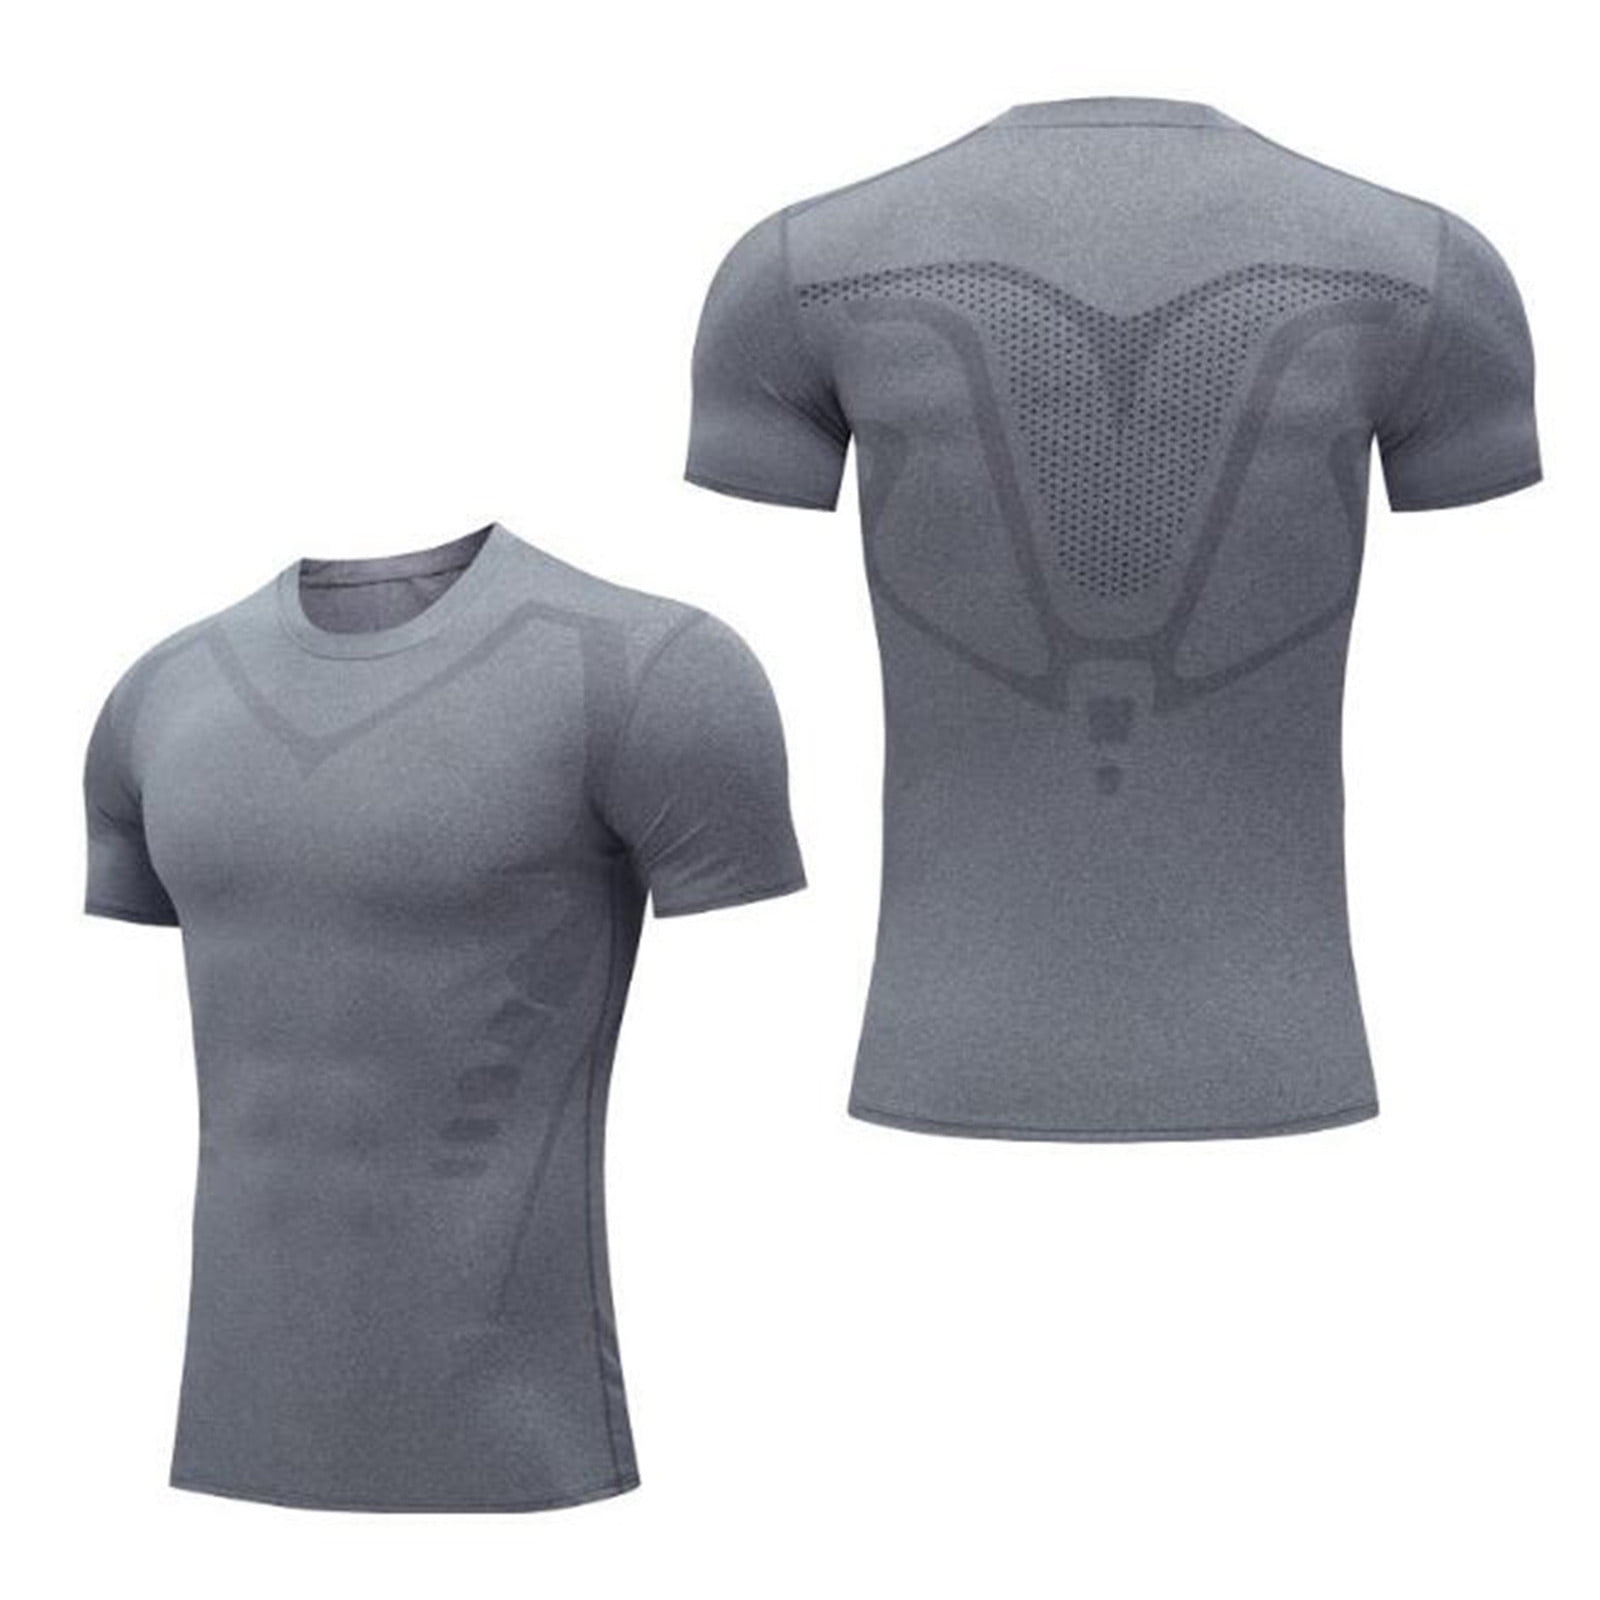 Aayomet T-Shirts For Men Men Compression Shirts Men Short Sleeve